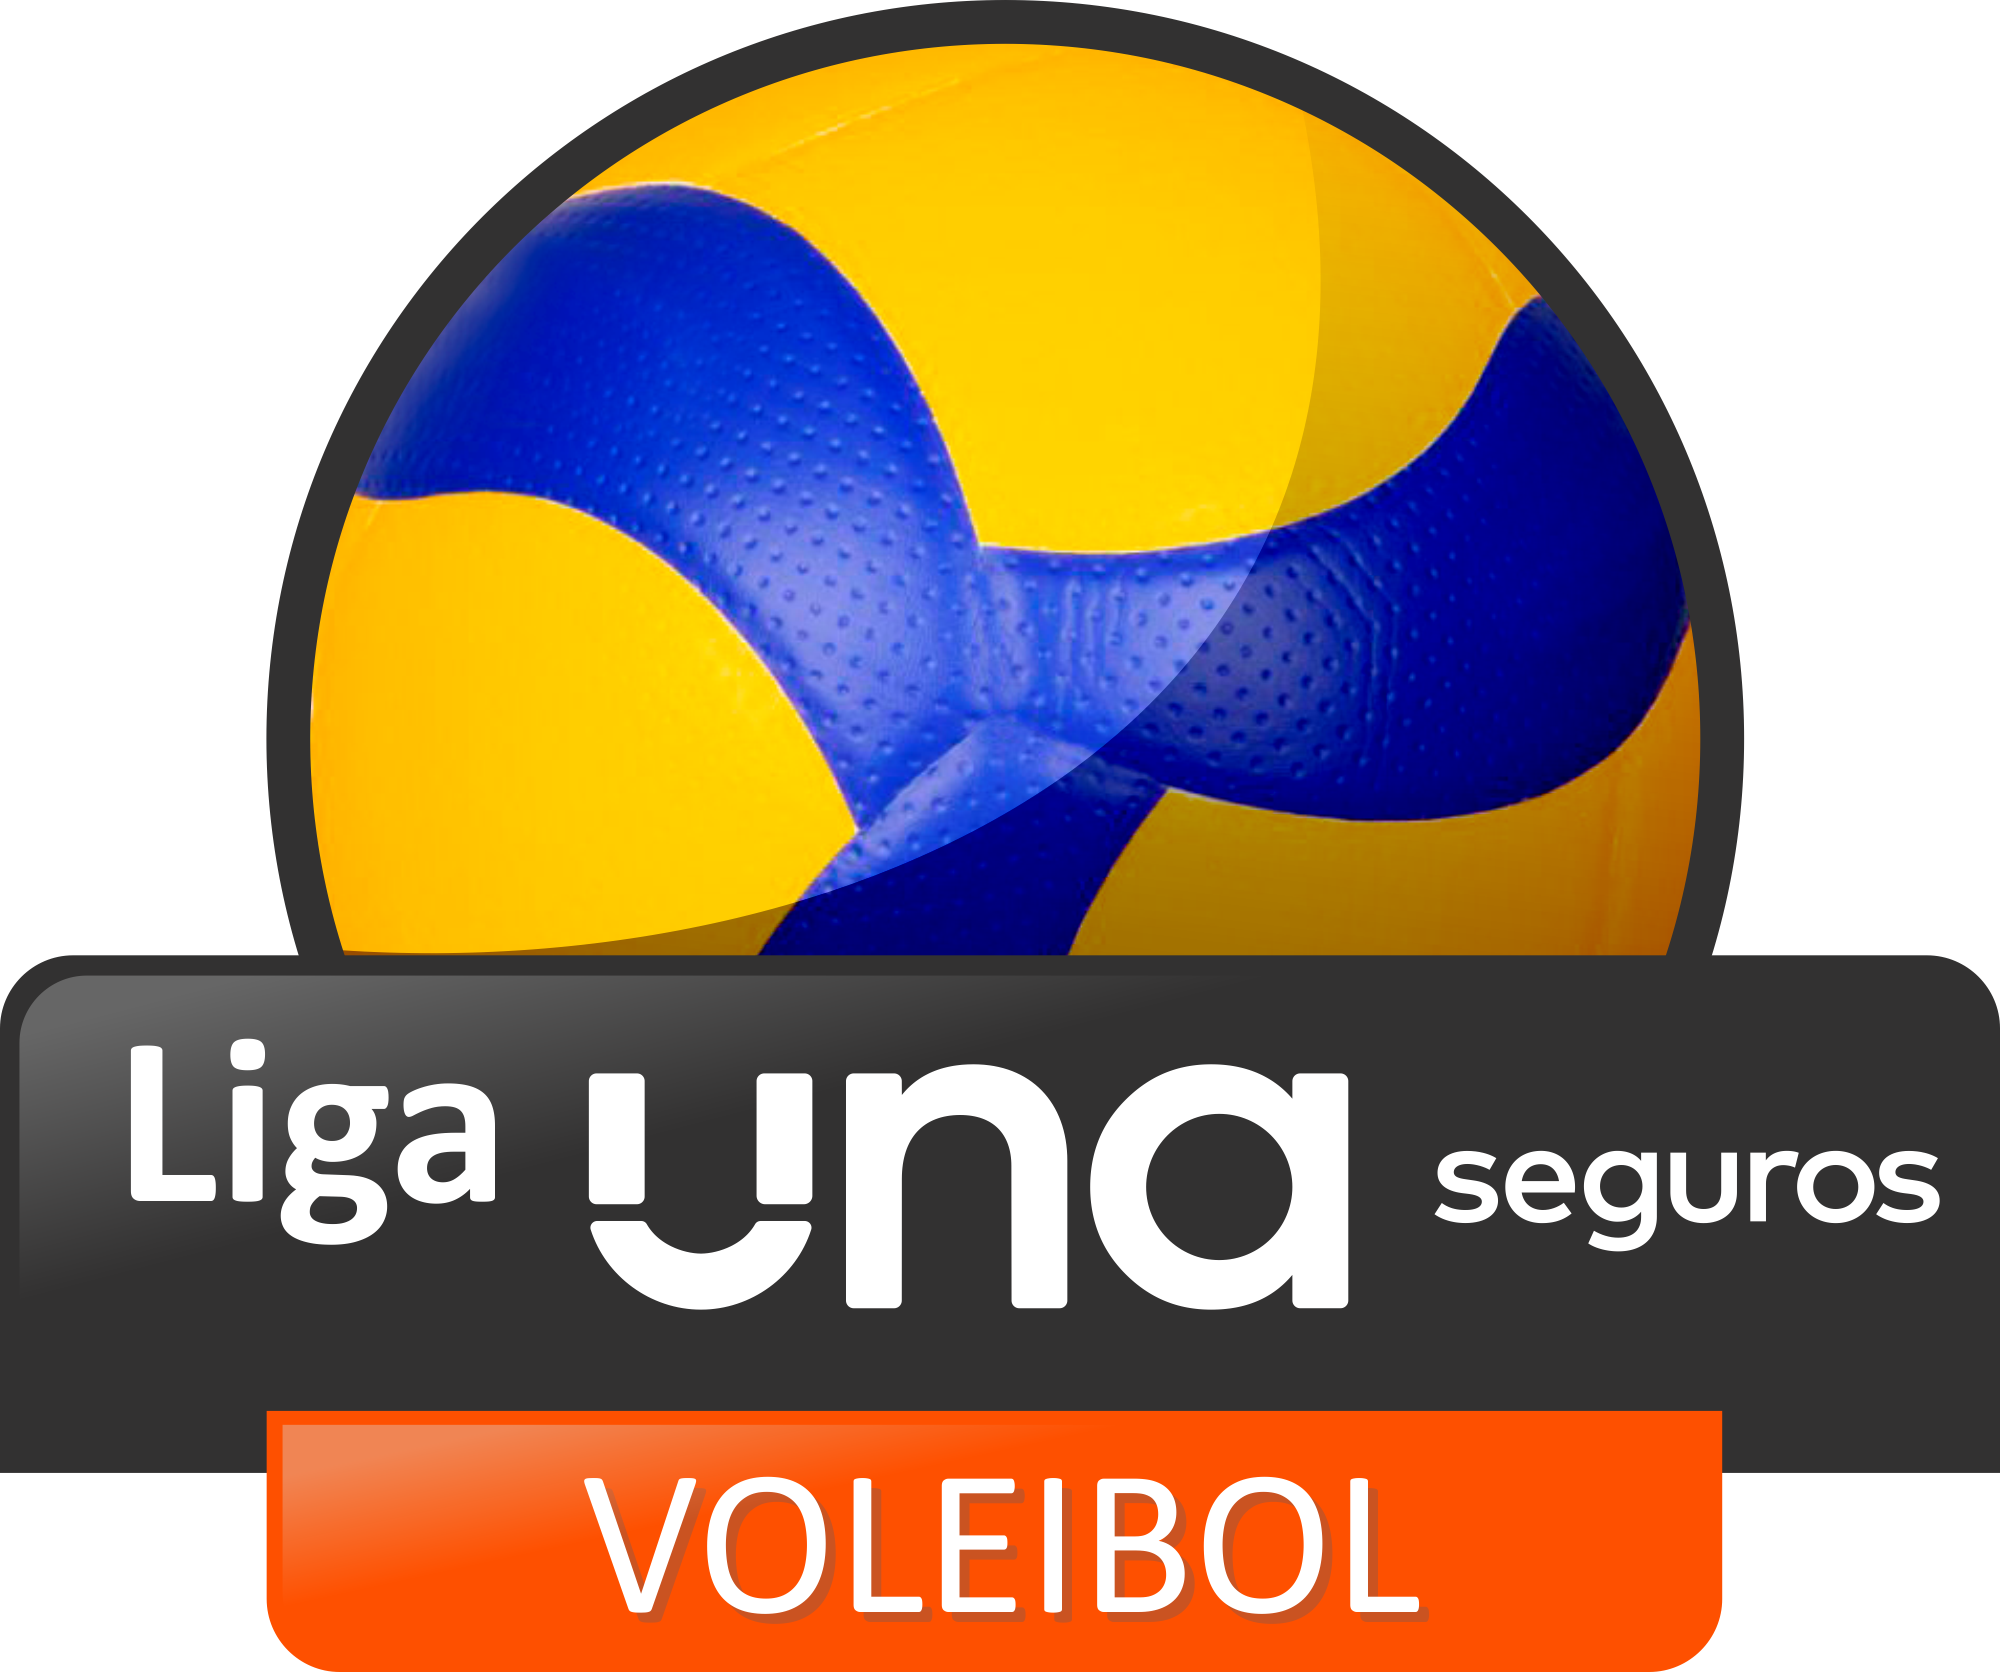 BLOCO HÚNGARO TRAVA PORTUGUESAS - Federação Portuguesa de Voleibol